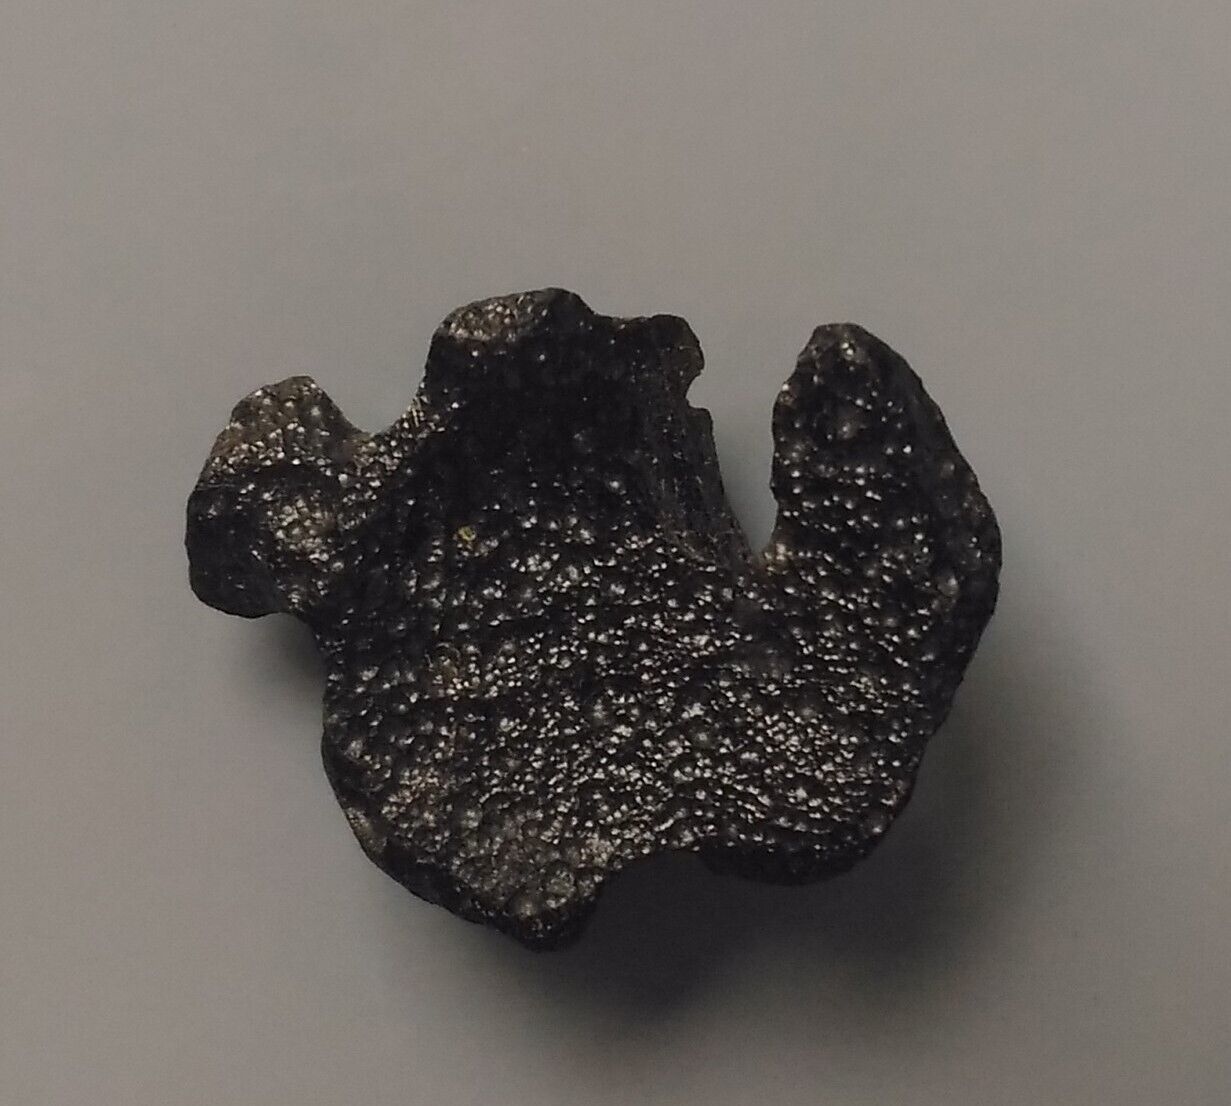 3 GRAM PHILIPPINITE TEKTITE (TE8/214) from meteorite impact